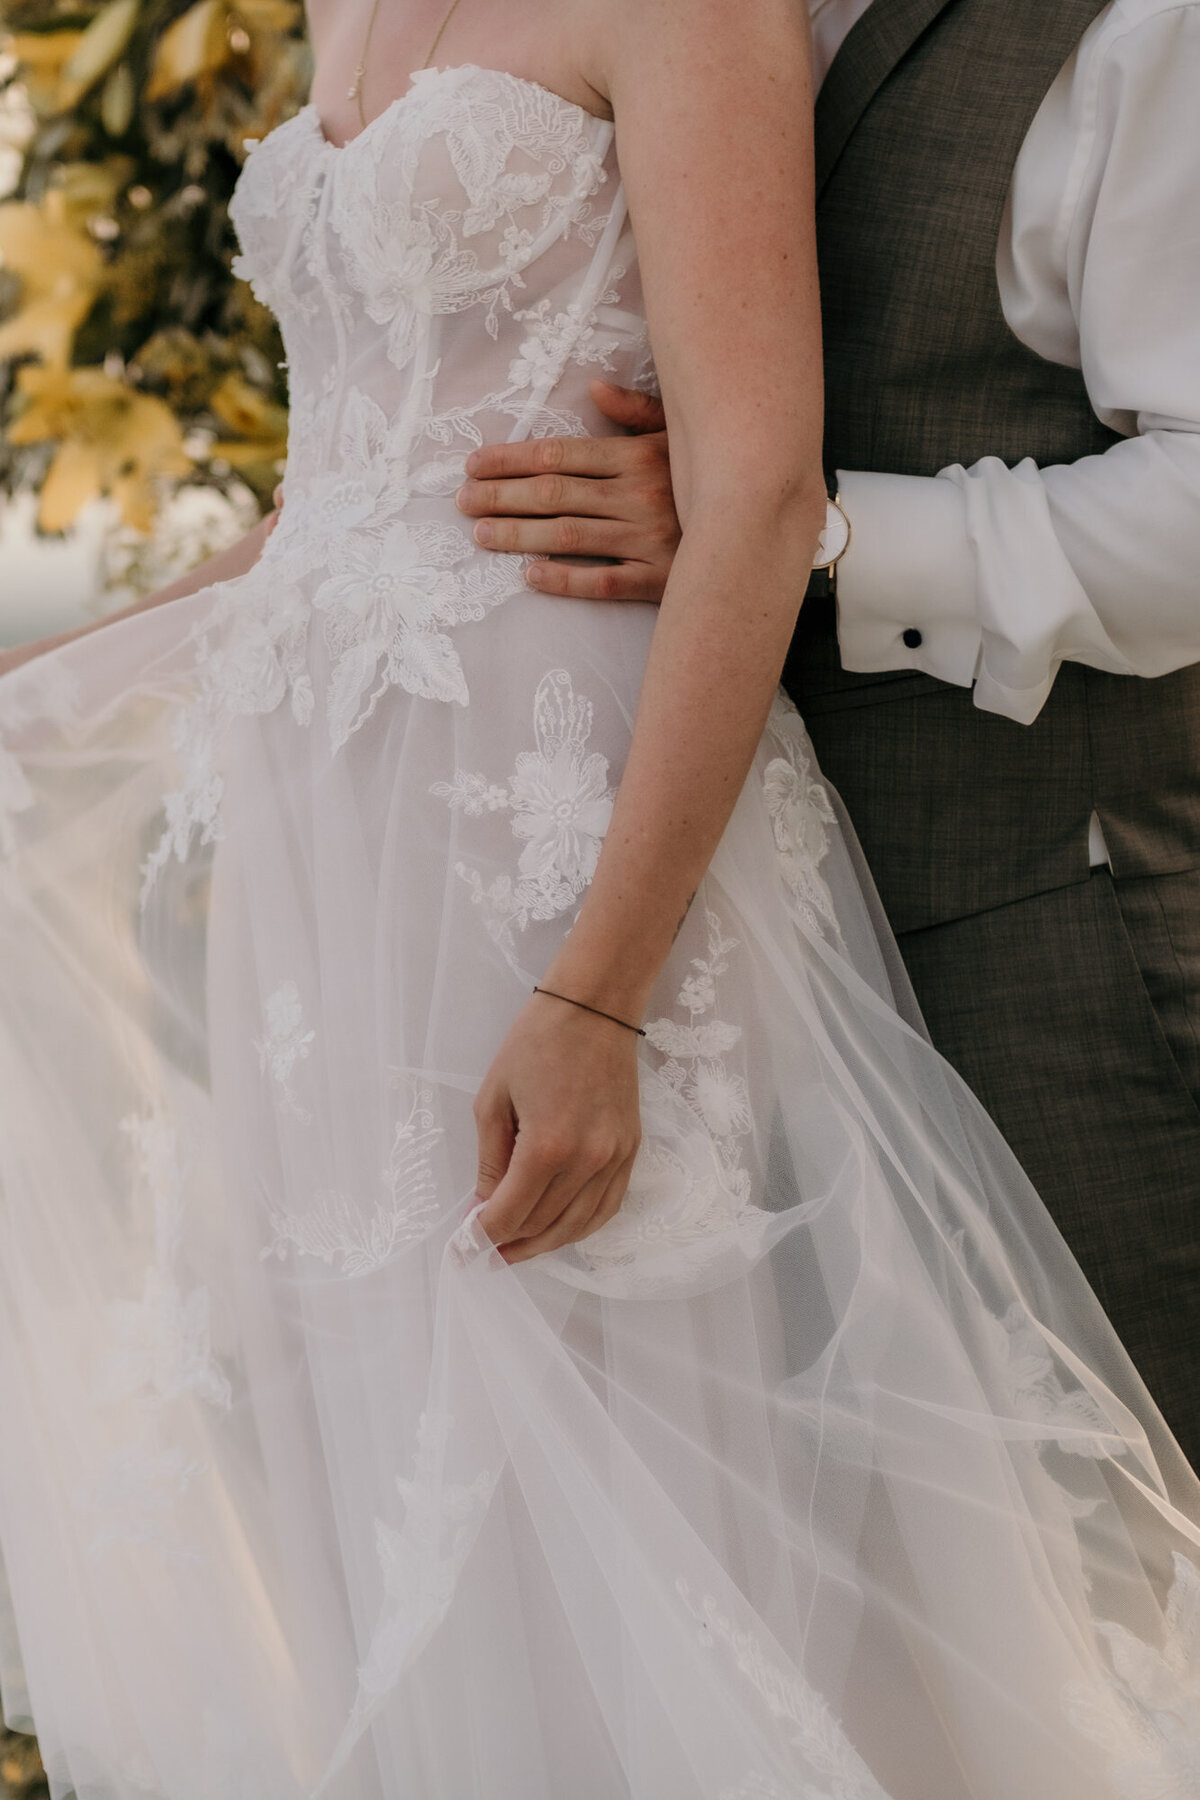 Dieser Ausschnitt zeigt die Braut mit dem Rücken an ihren Mann gelehnt, ihr Kleid haltend.